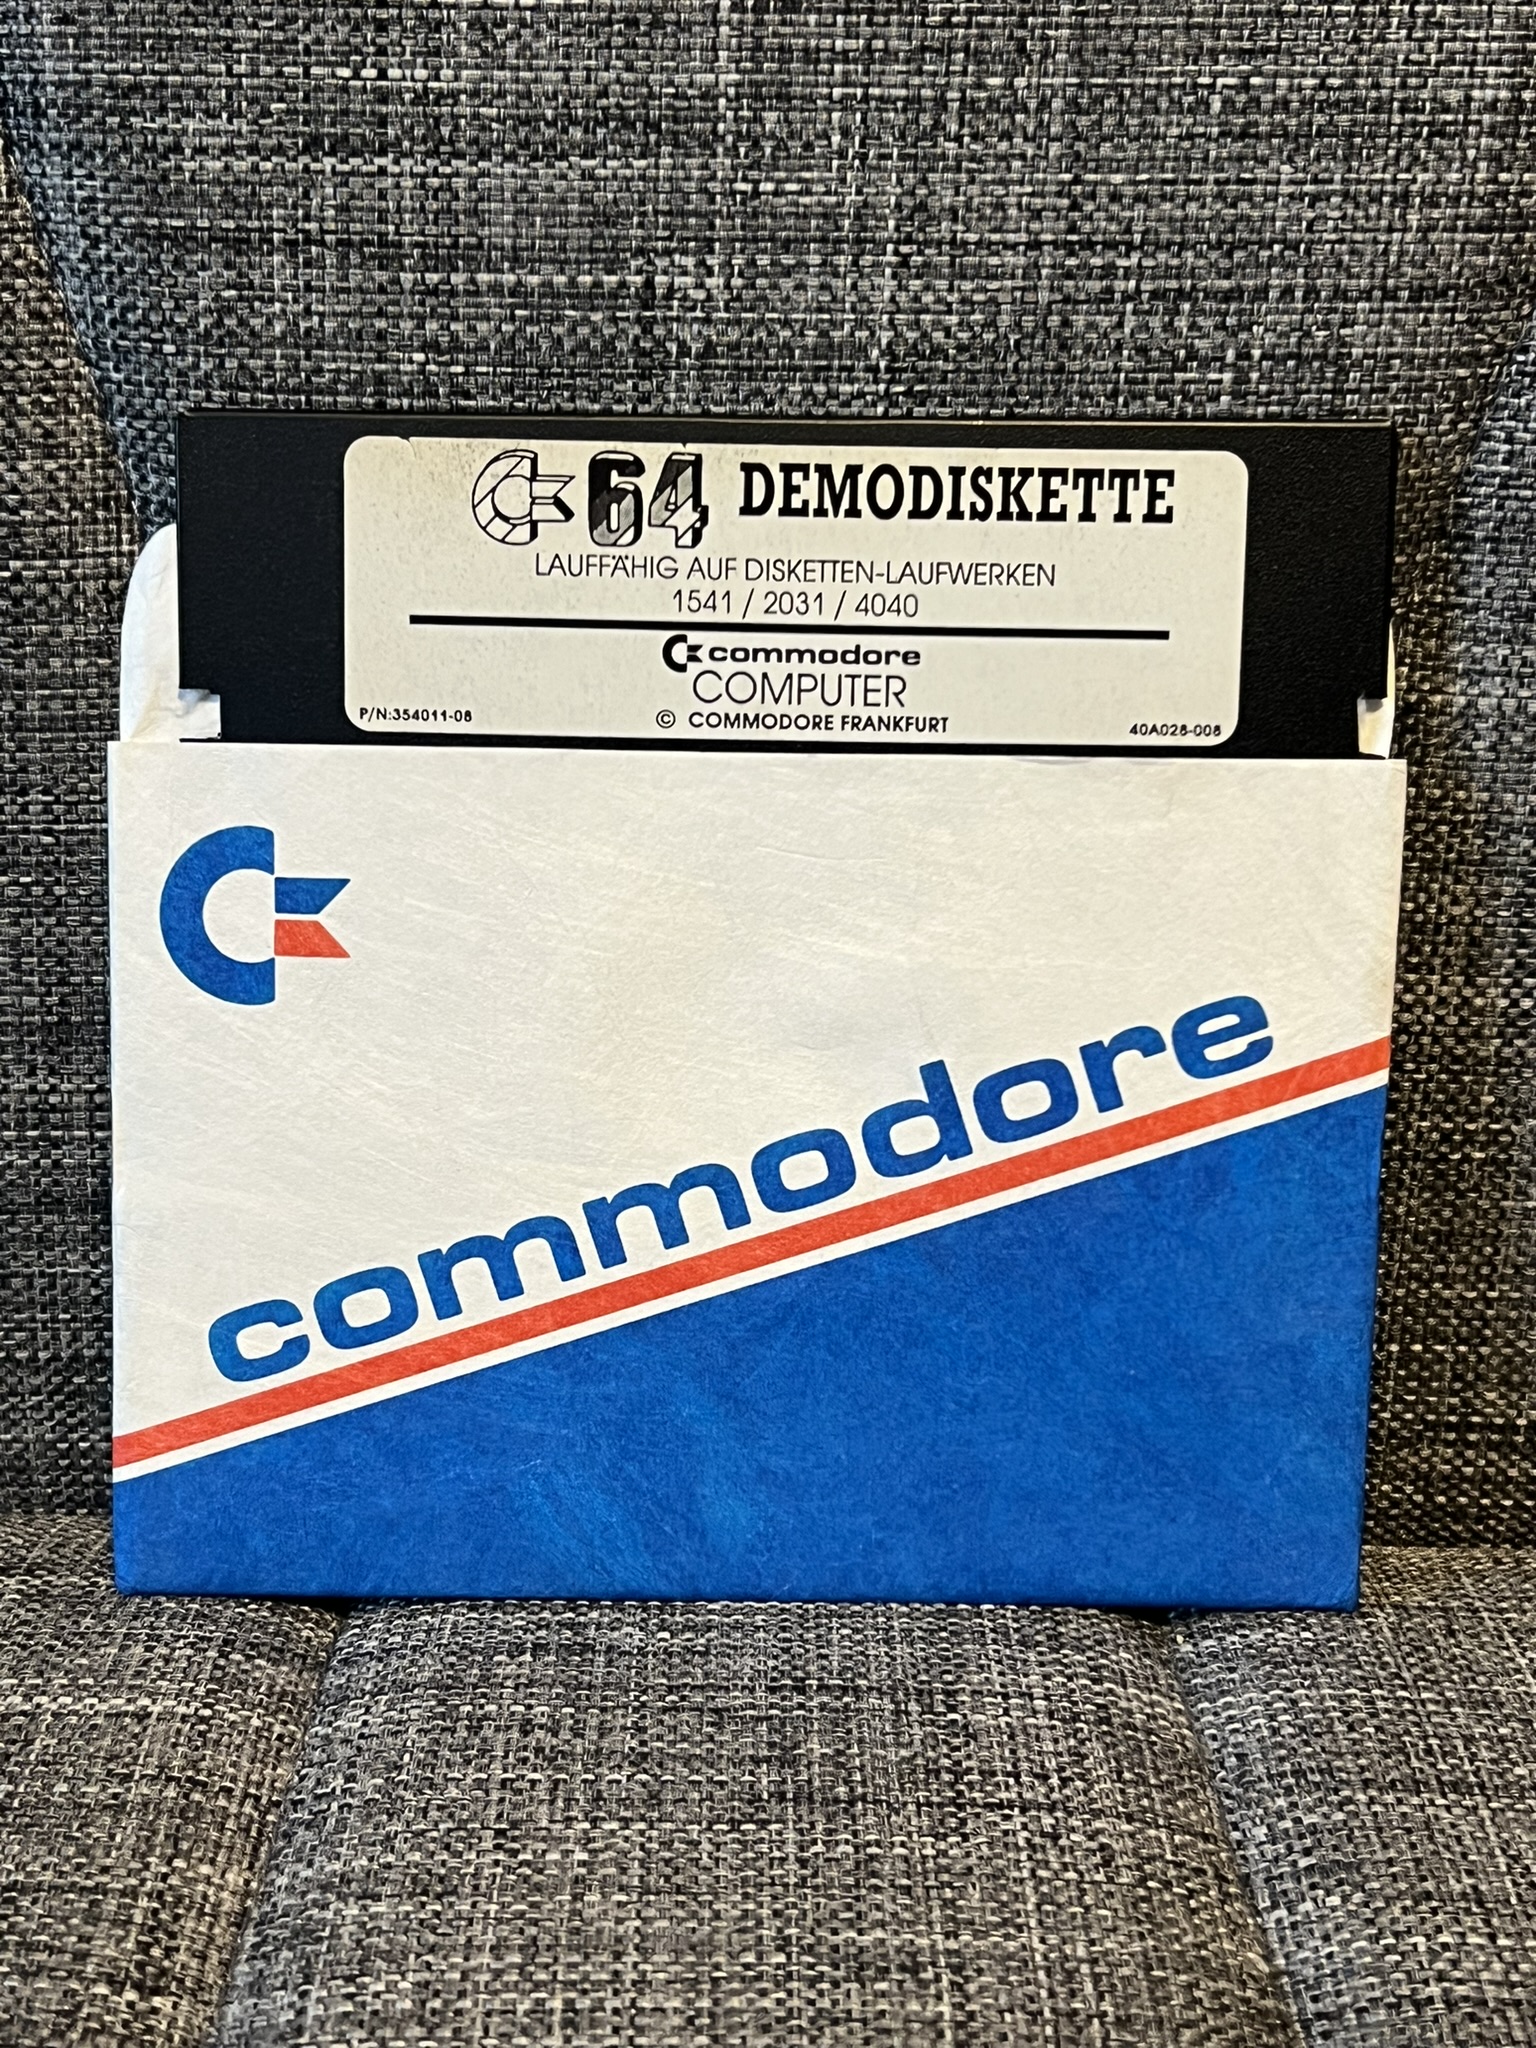 Demo Diskette